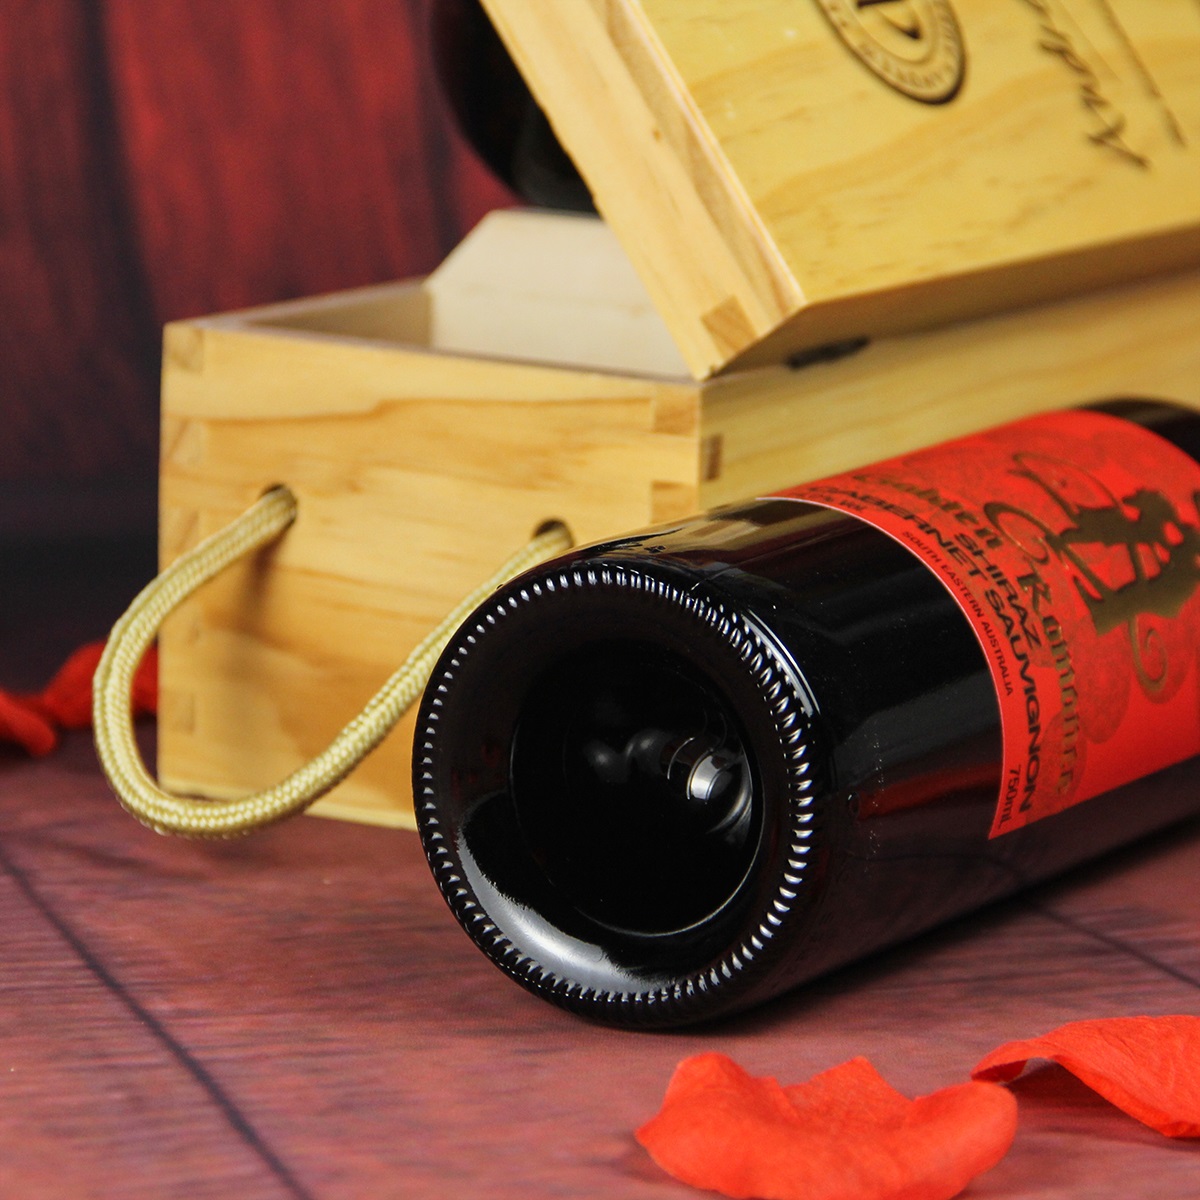 澳大利亚东南澳安德鲁皮士酒庄西拉赤霞珠金色浪漫干红葡萄酒红酒